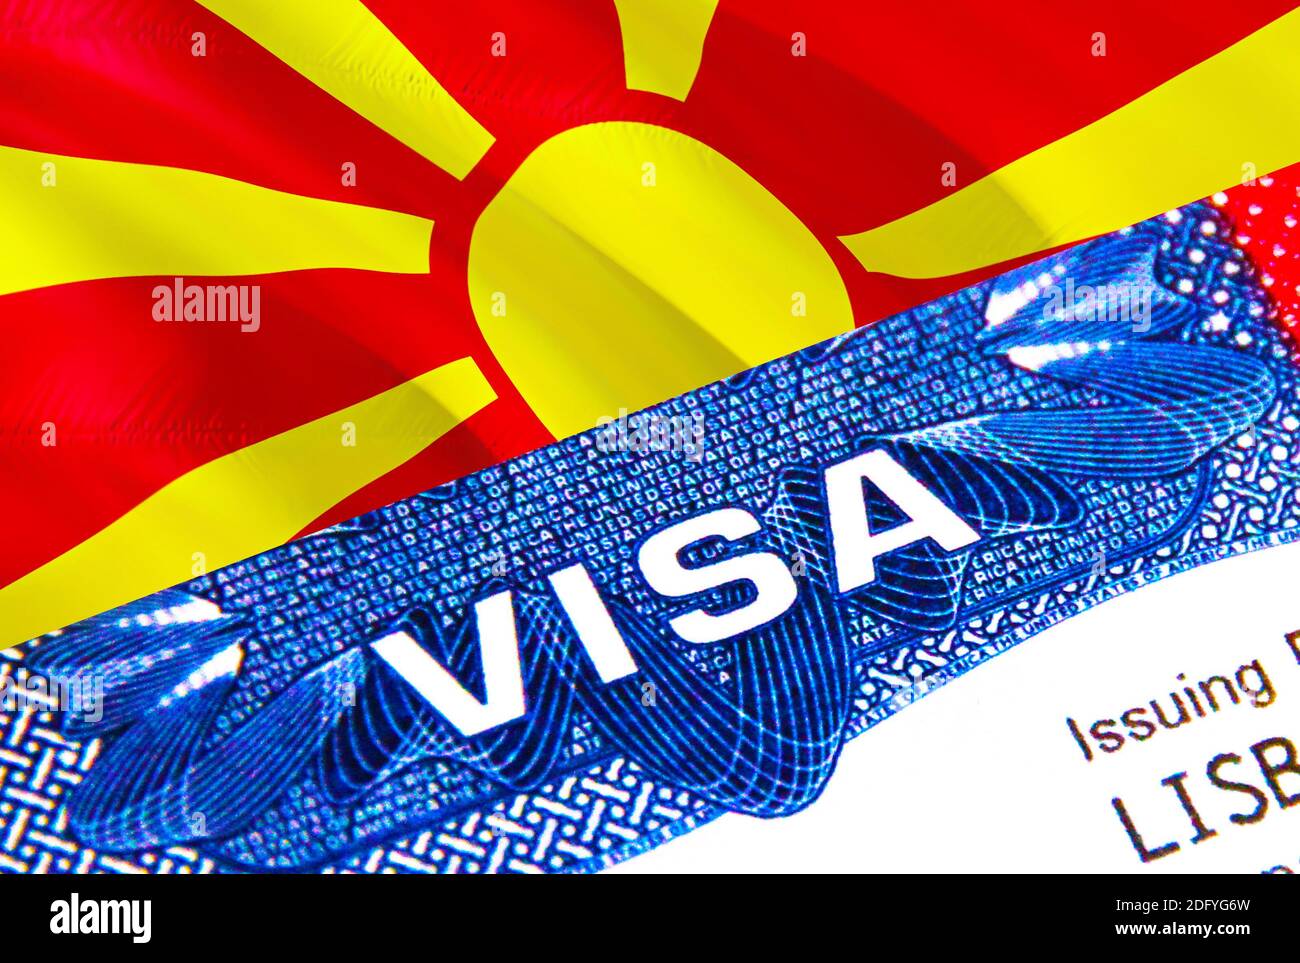 Macédoine du Nord Visa en passeport. Visa d'immigration des États-Unis pour  les citoyens de la Macédoine du Nord se concentrant sur le mot VISA. Voyage  Nord Macédoine visa dans IDE national Photo